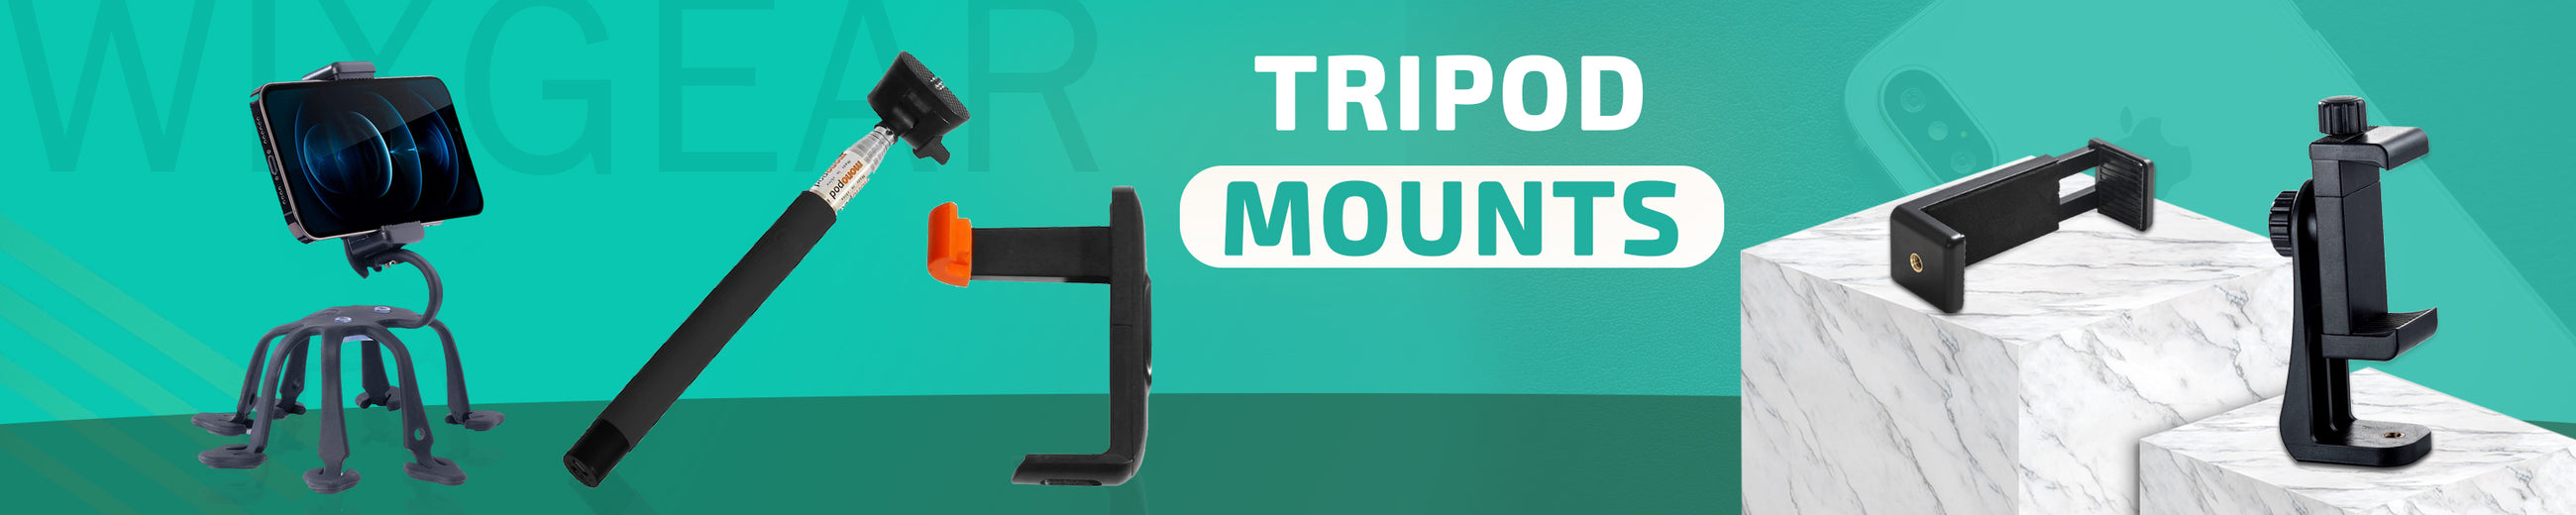 Tripod Mounts